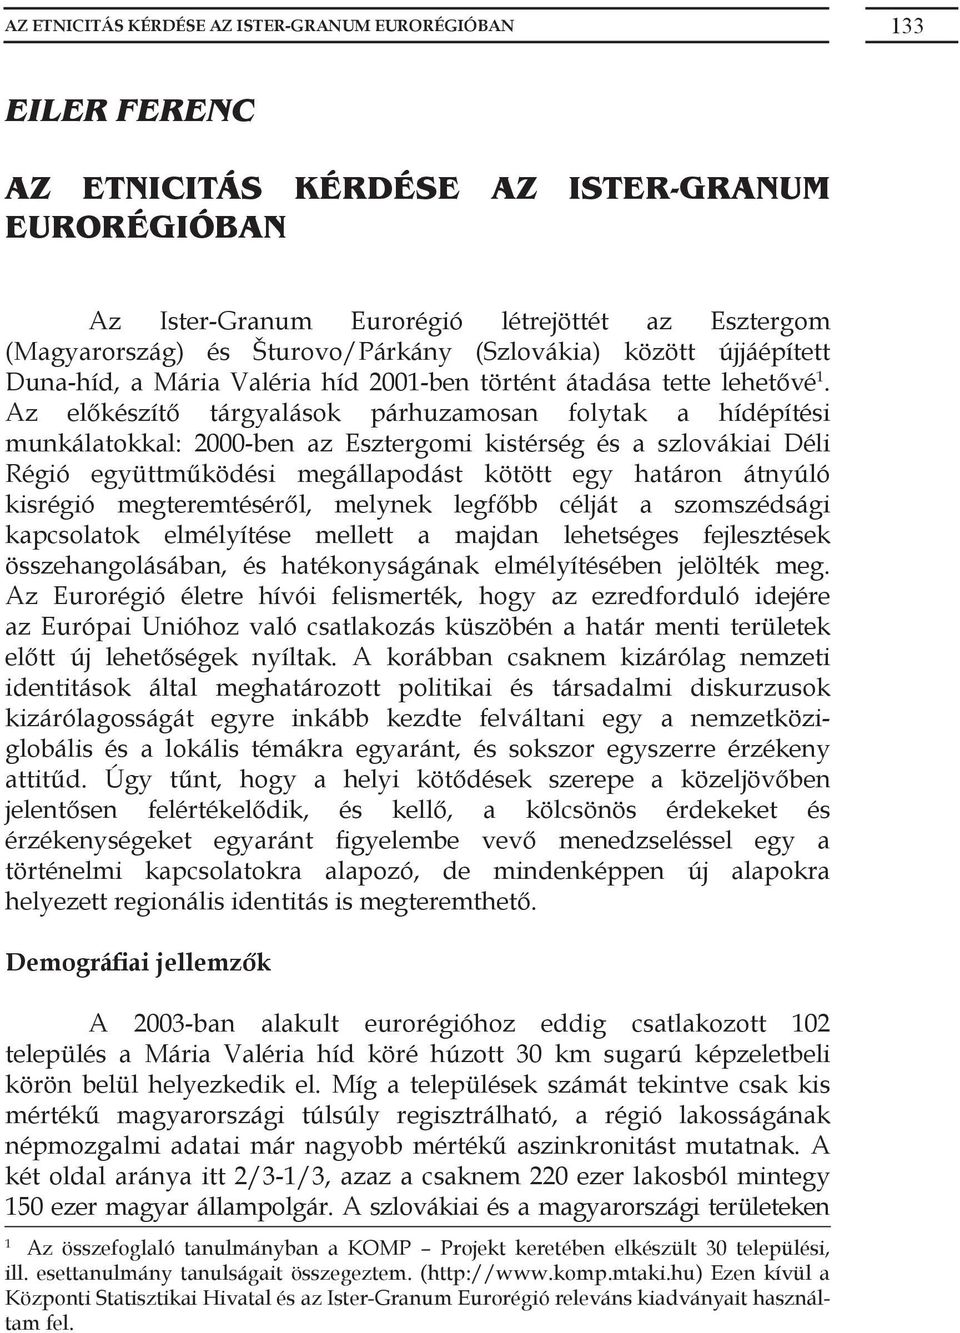 Az előkészítő tárgyalások párhuzamosan folytak a hídépítési munkálatokkal: 2000-ben az Esztergomi kistérség és a szlovákiai Déli Régió együttműködési megállapodást kötött egy határon átnyúló kisrégió